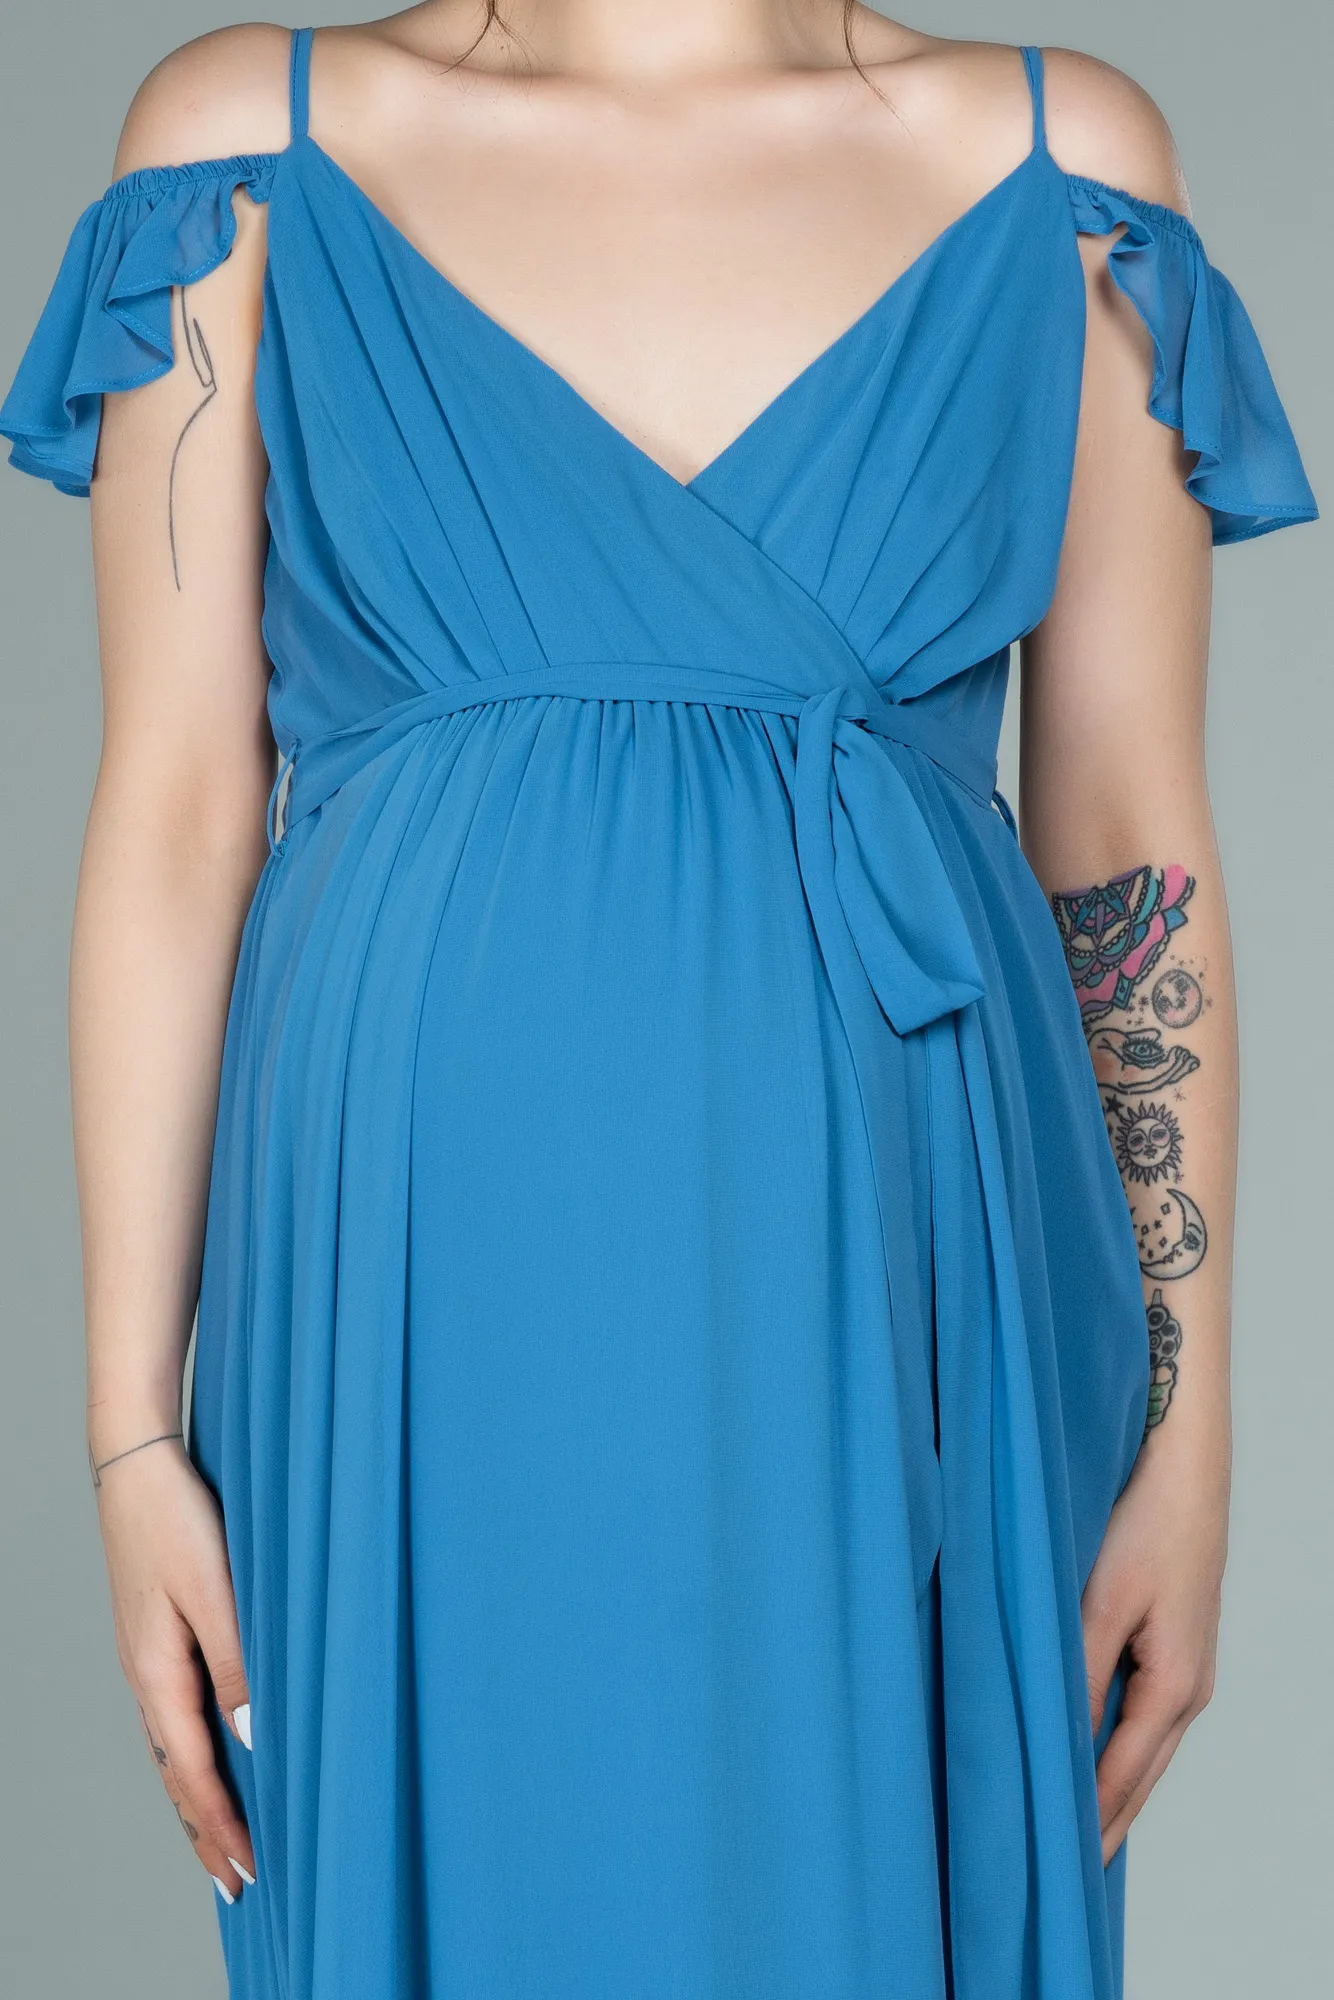 Indigo-Long Pregnancy Evening Dress ABU756